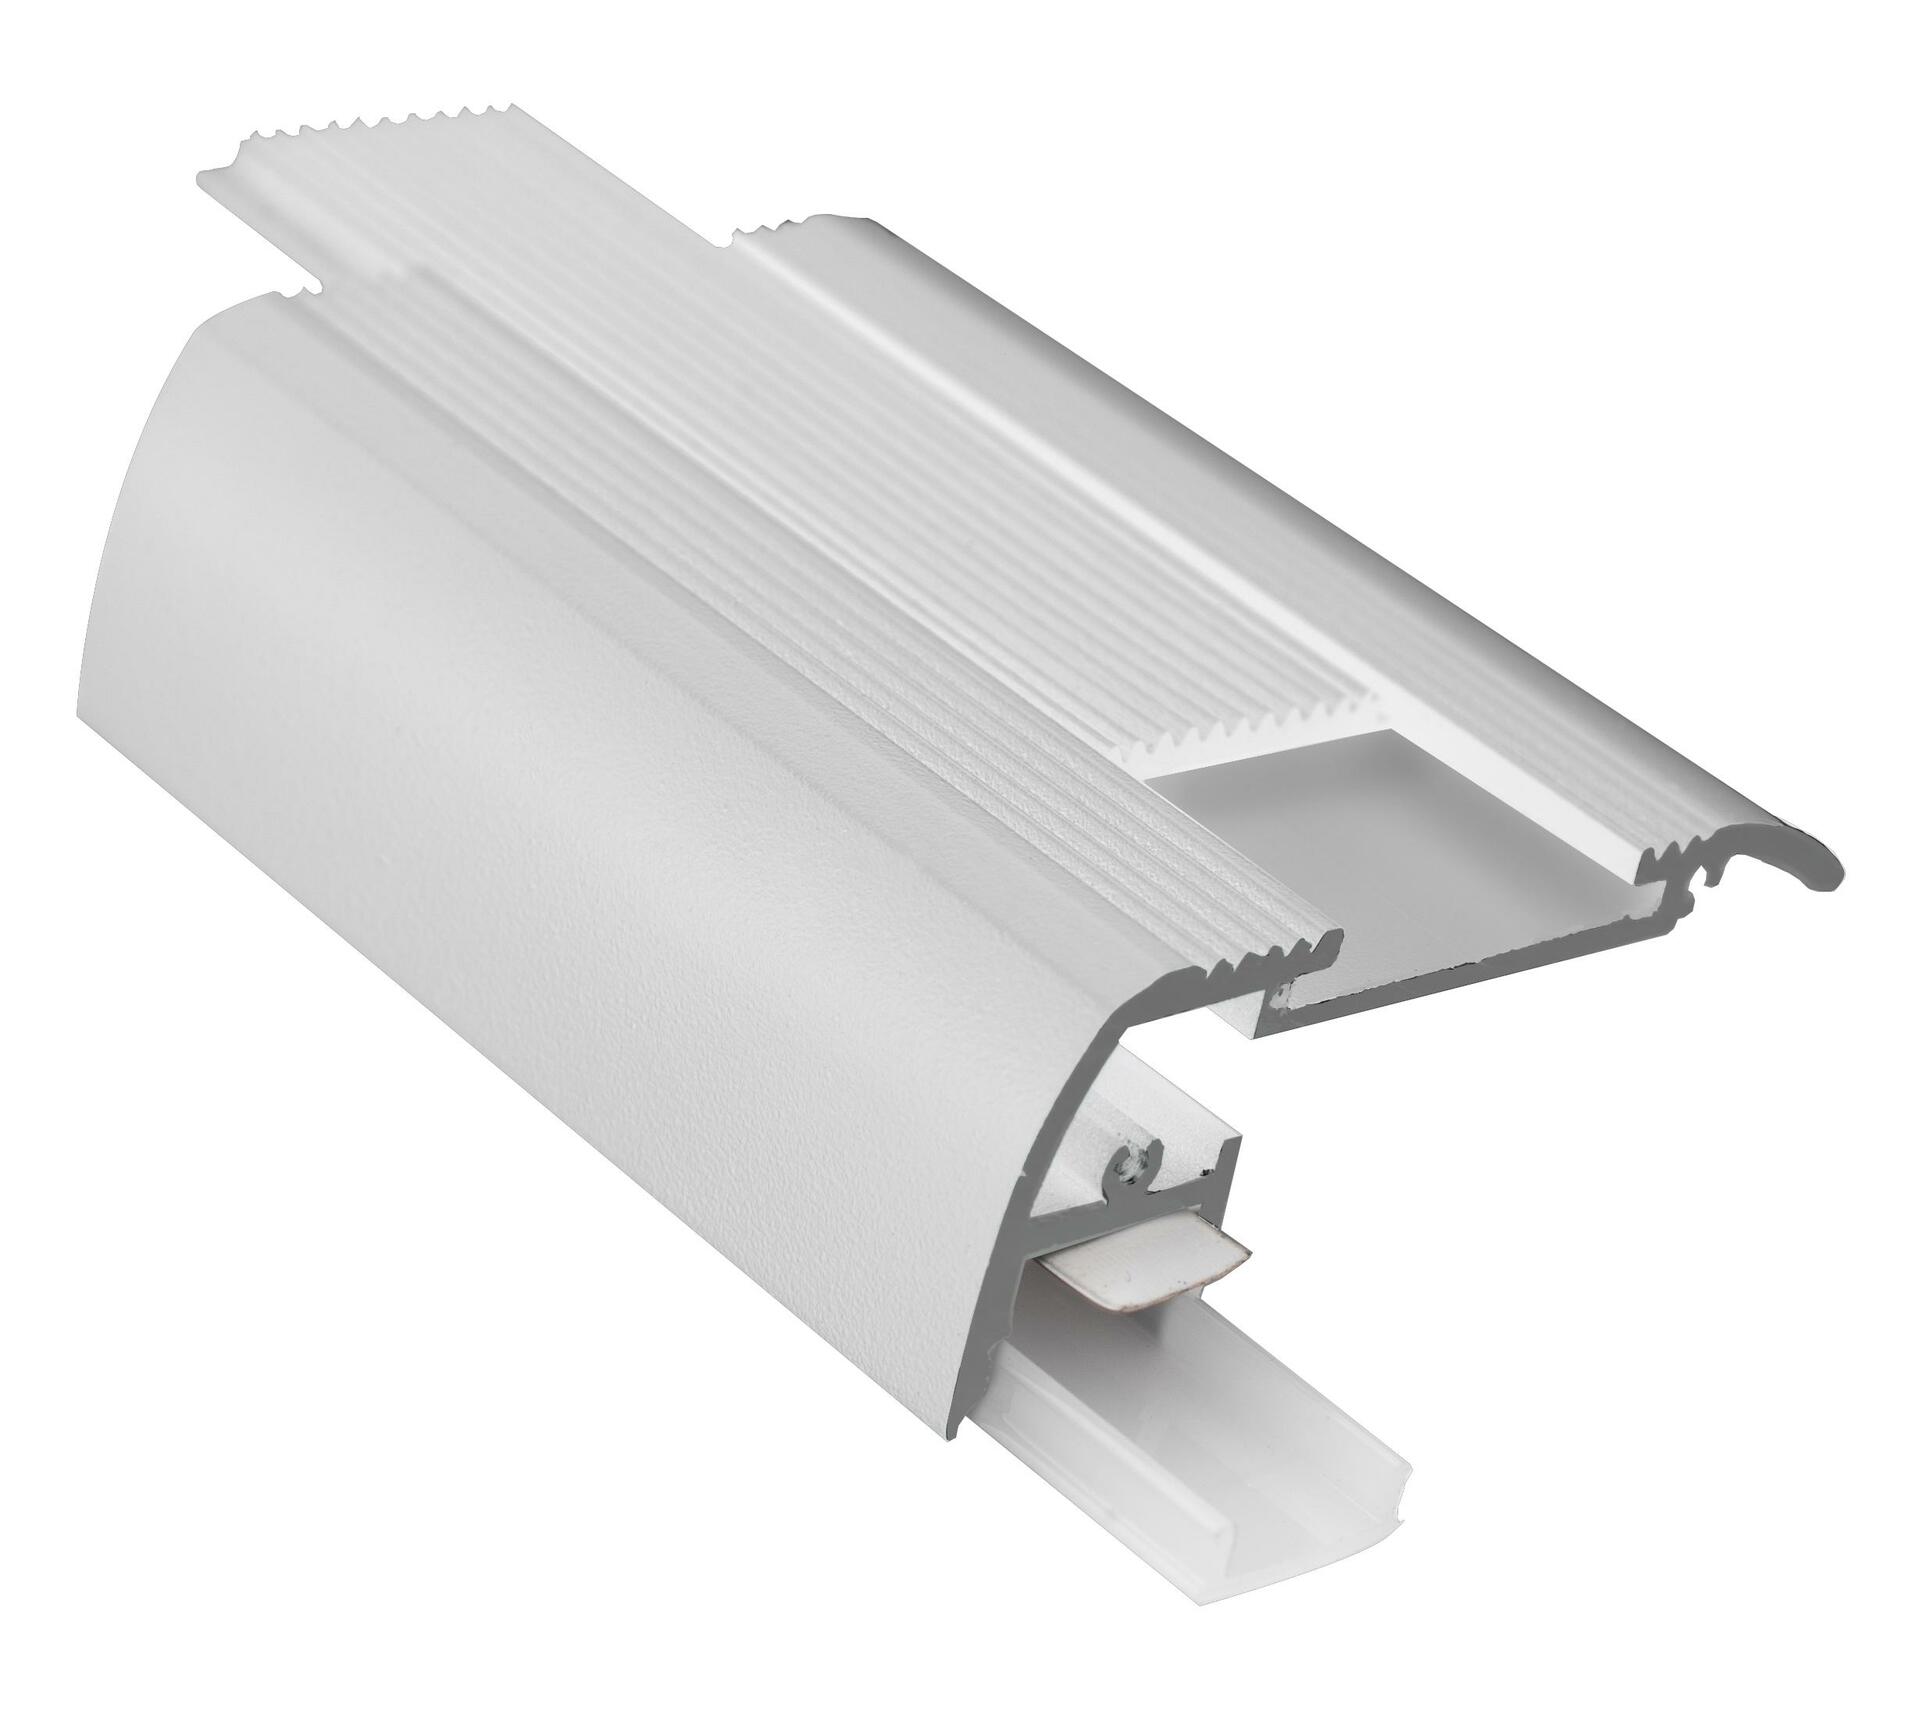 CENTURY AL PROFIL schodišťová lišta 65x28mm pro LED pásek 8mm rovný svit opálový kryt IP20 délka 1,5m CEN KPRSC-6528